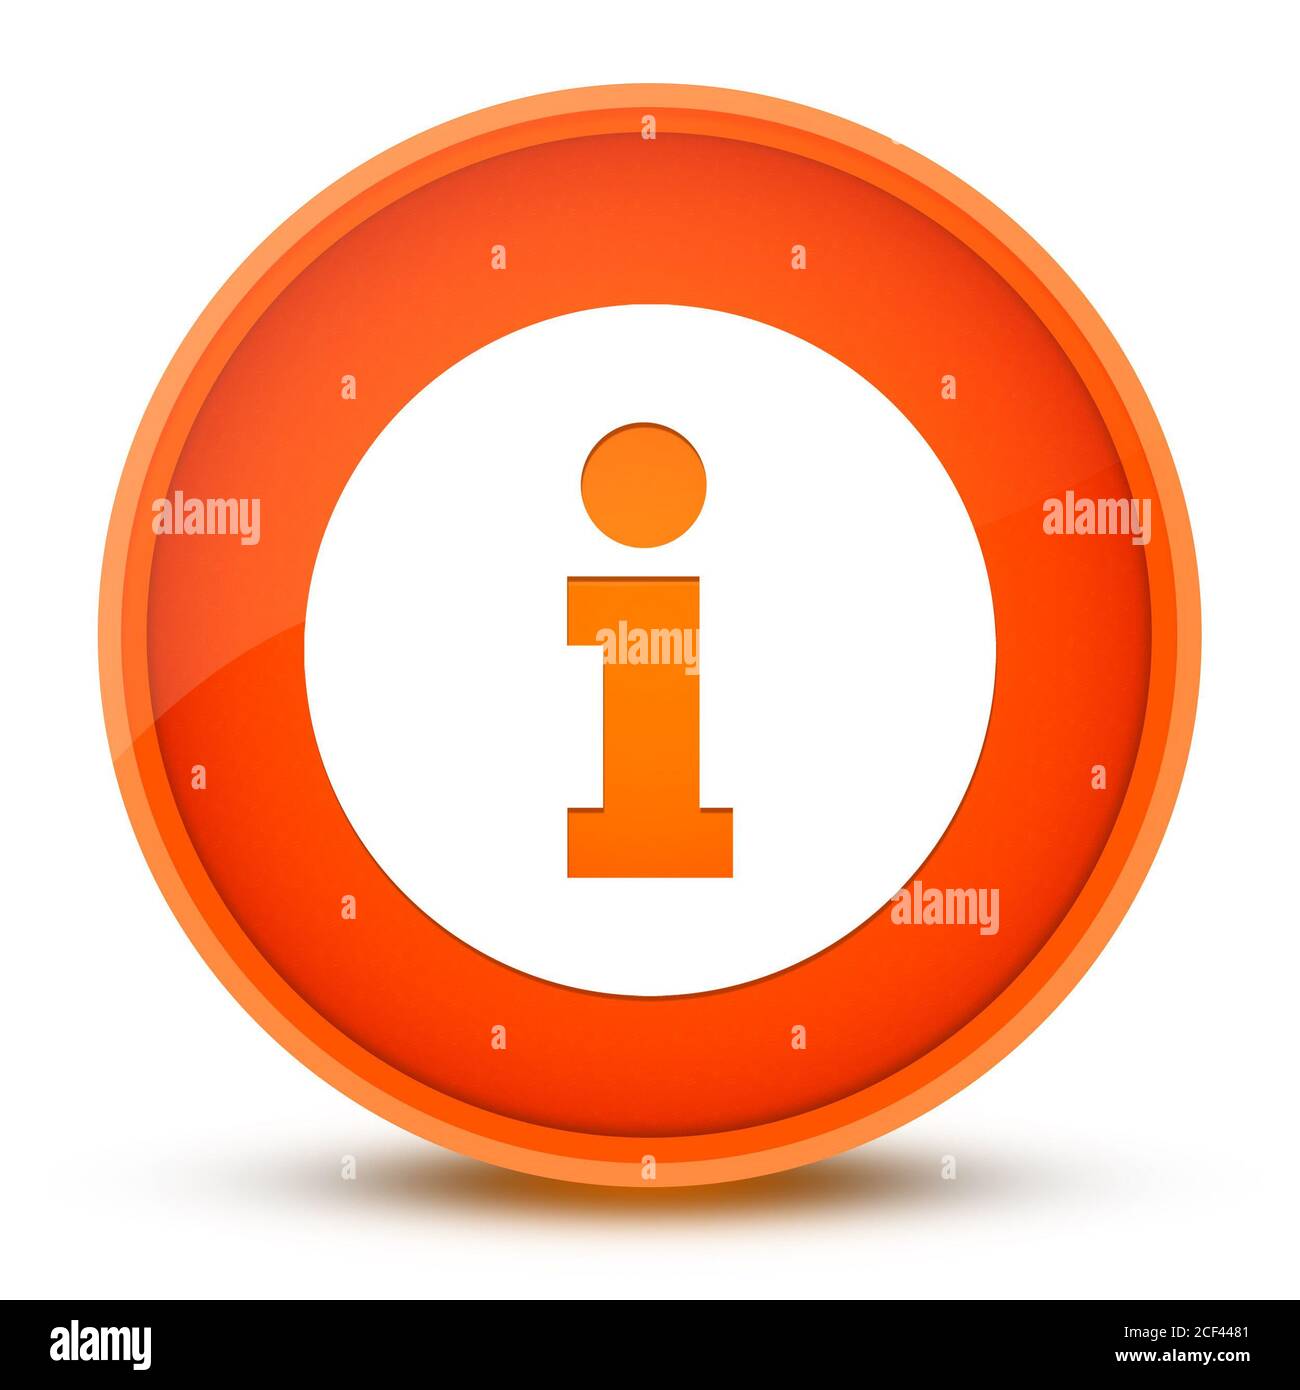 L'icône Infos isolé sur bouton rond orange brillant abstract illustration Banque D'Images